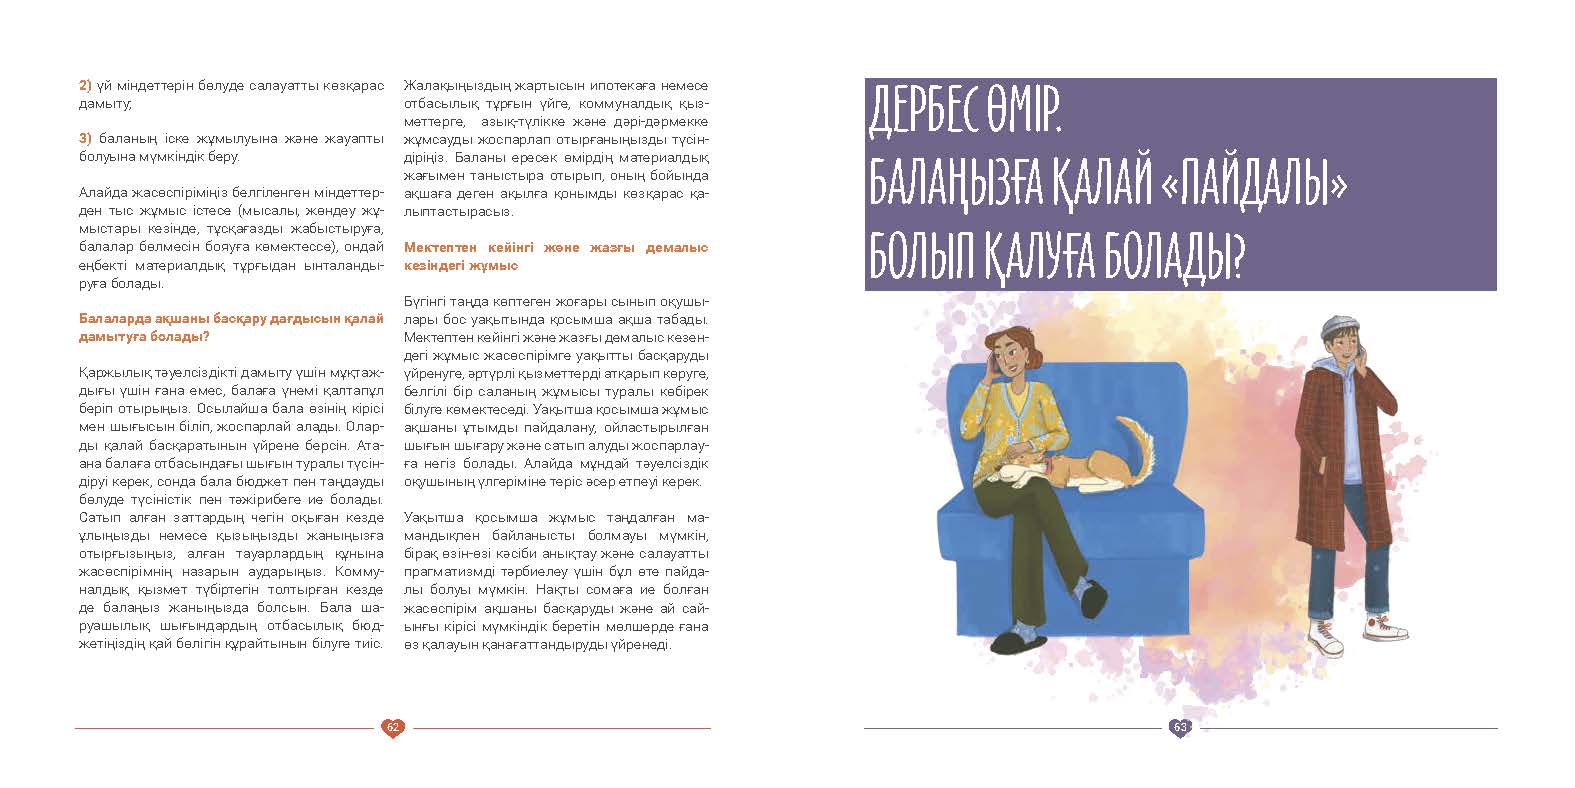 EVAC brochure KAZ (32).jpg